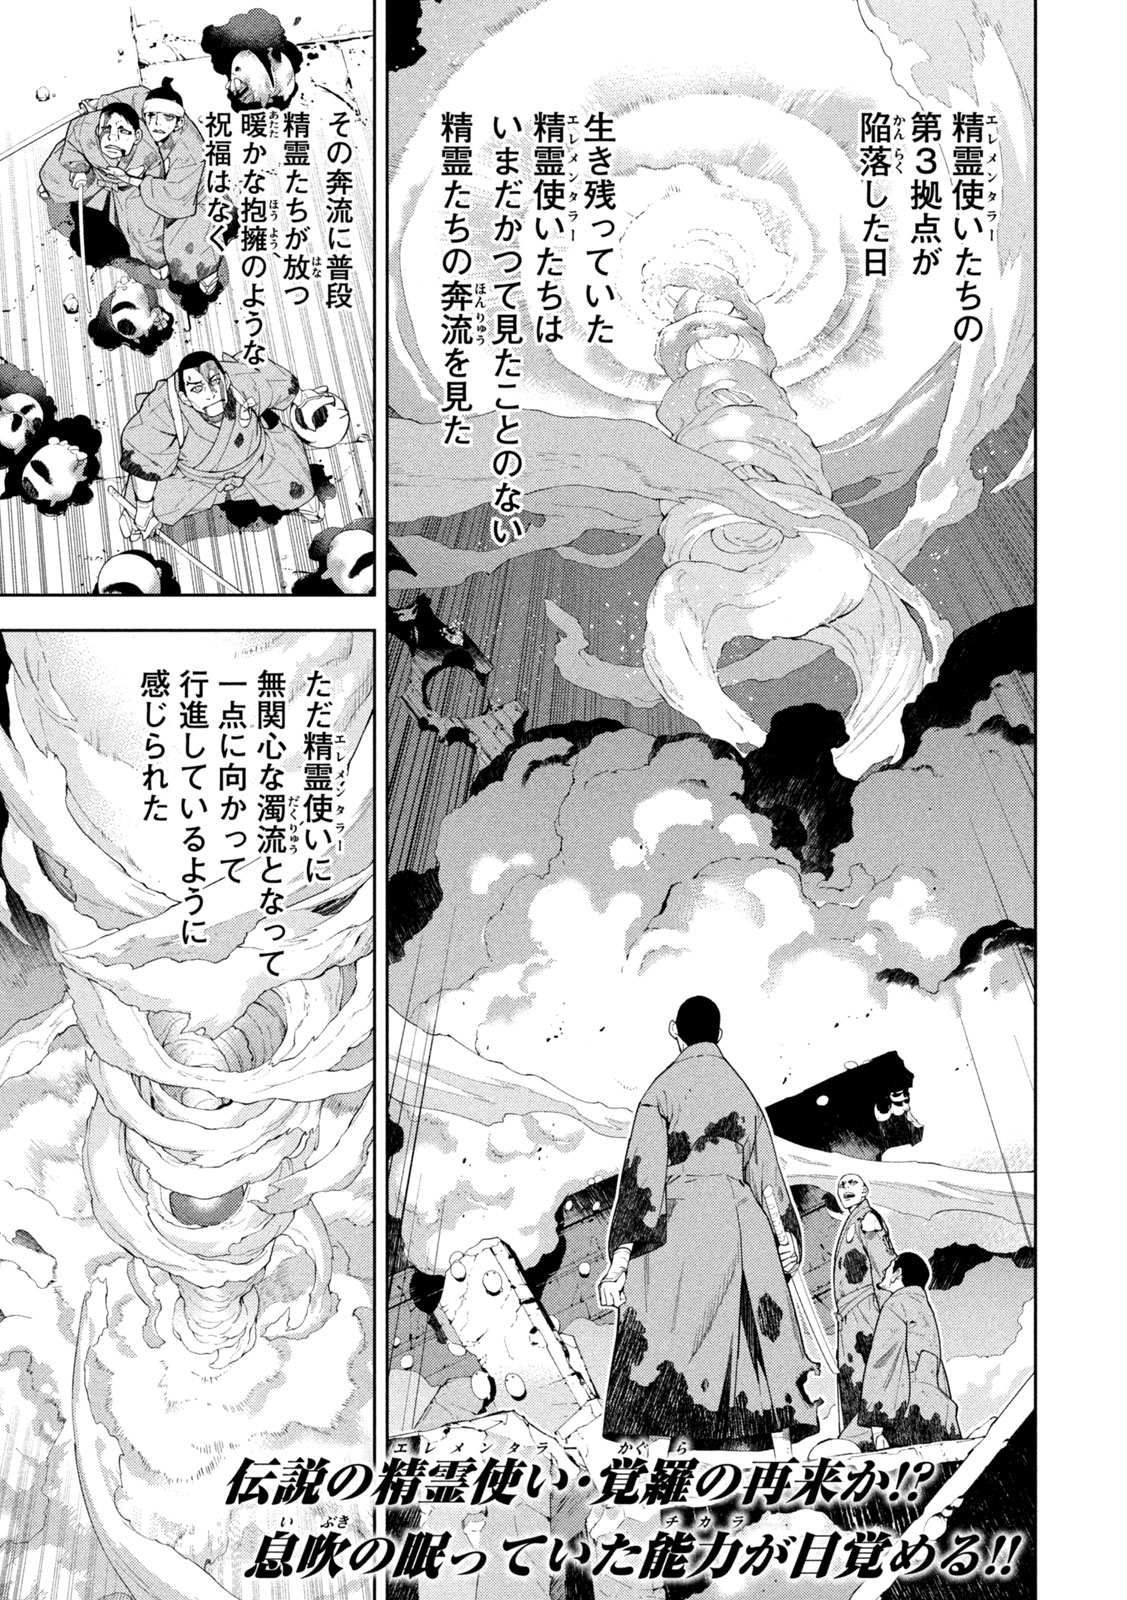 Seirei Tsukai – Chito no Jinshi - Chapter 26 - Page 2